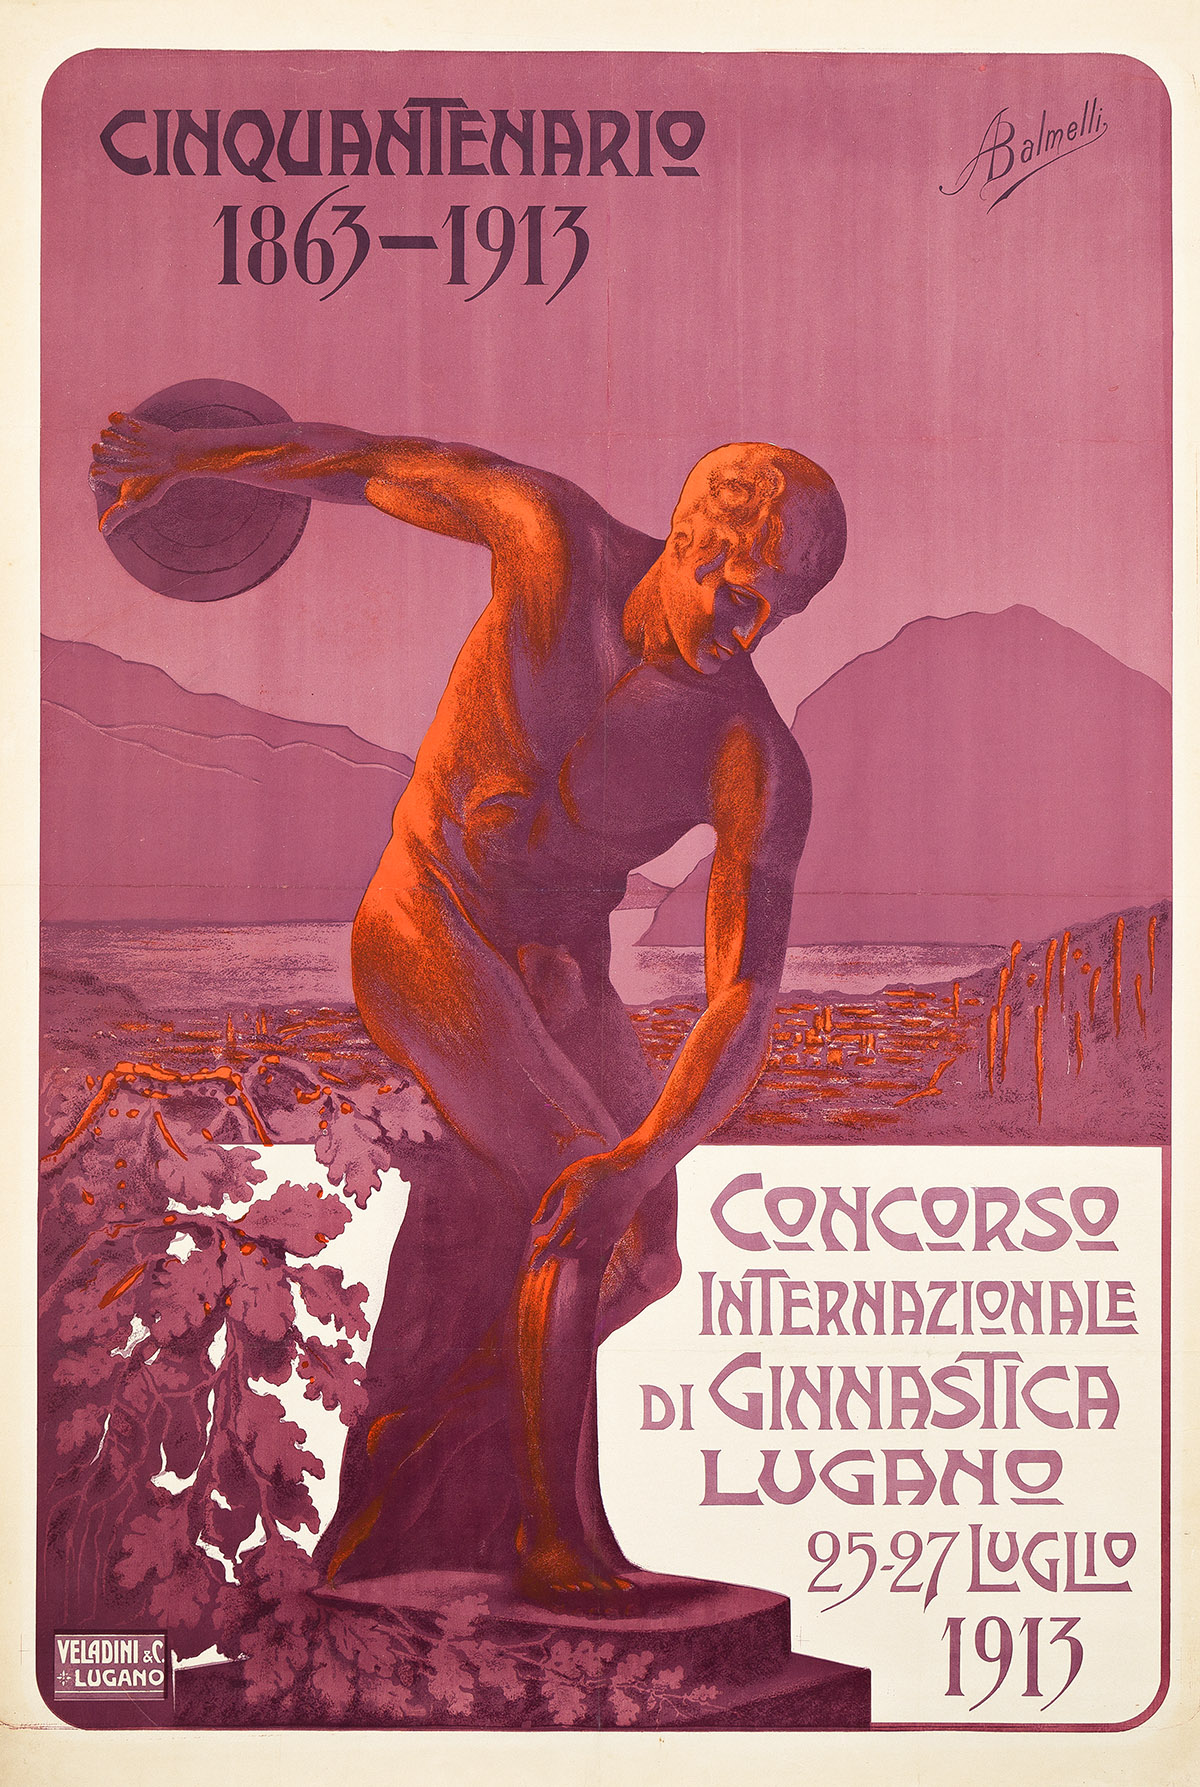 ATTILIO BALMELLI (1887-1971). CONCORSO INTERNAZIONALE DI GINNASTICA LUGANO. 1913. 50¾x34¼ inches, 129x87 cm. Veladini & C., Lugano.